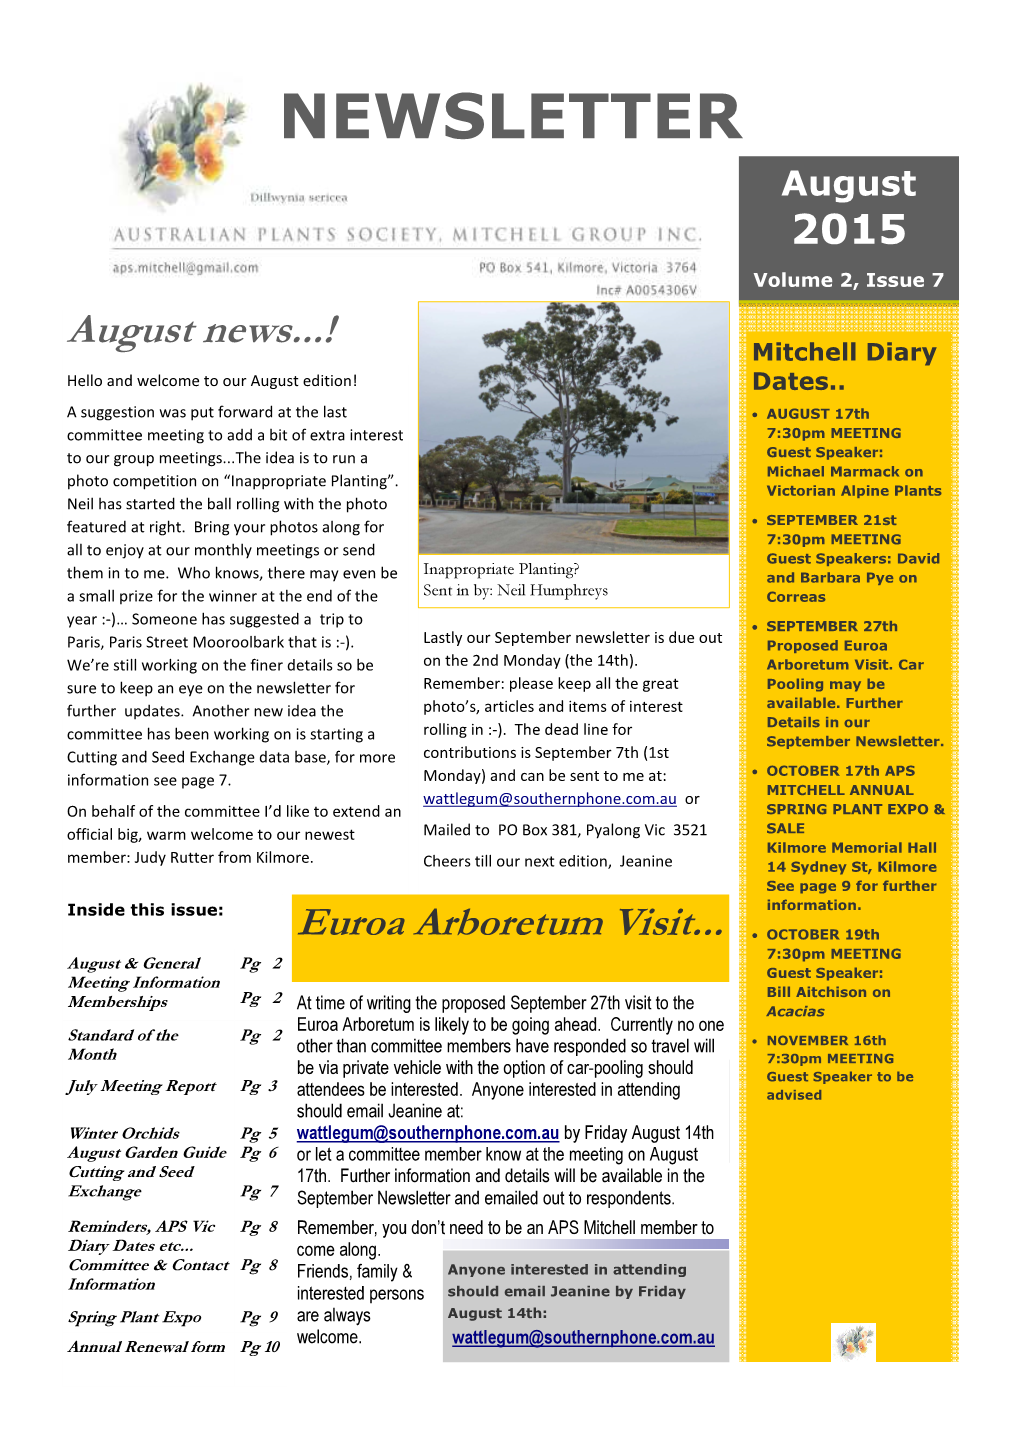 APS Mitchell Newsletter 2015.2.7 Aug.Pub